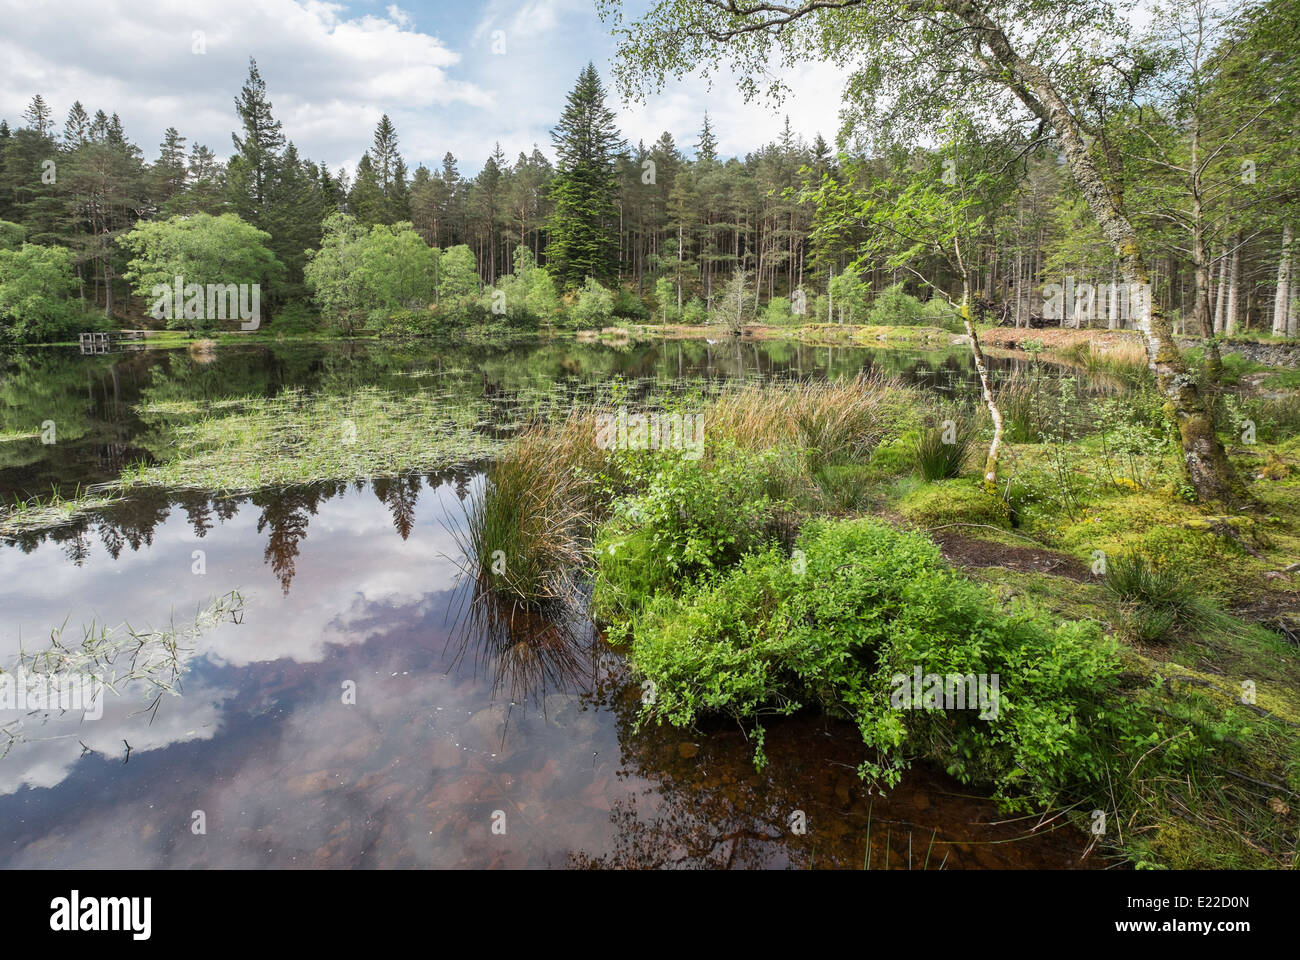 Lochan Glencoe loch d'eau douce dans des forêts de bois. Glencoe, Highland, Scotland, UK, Grande-Bretagne Banque D'Images